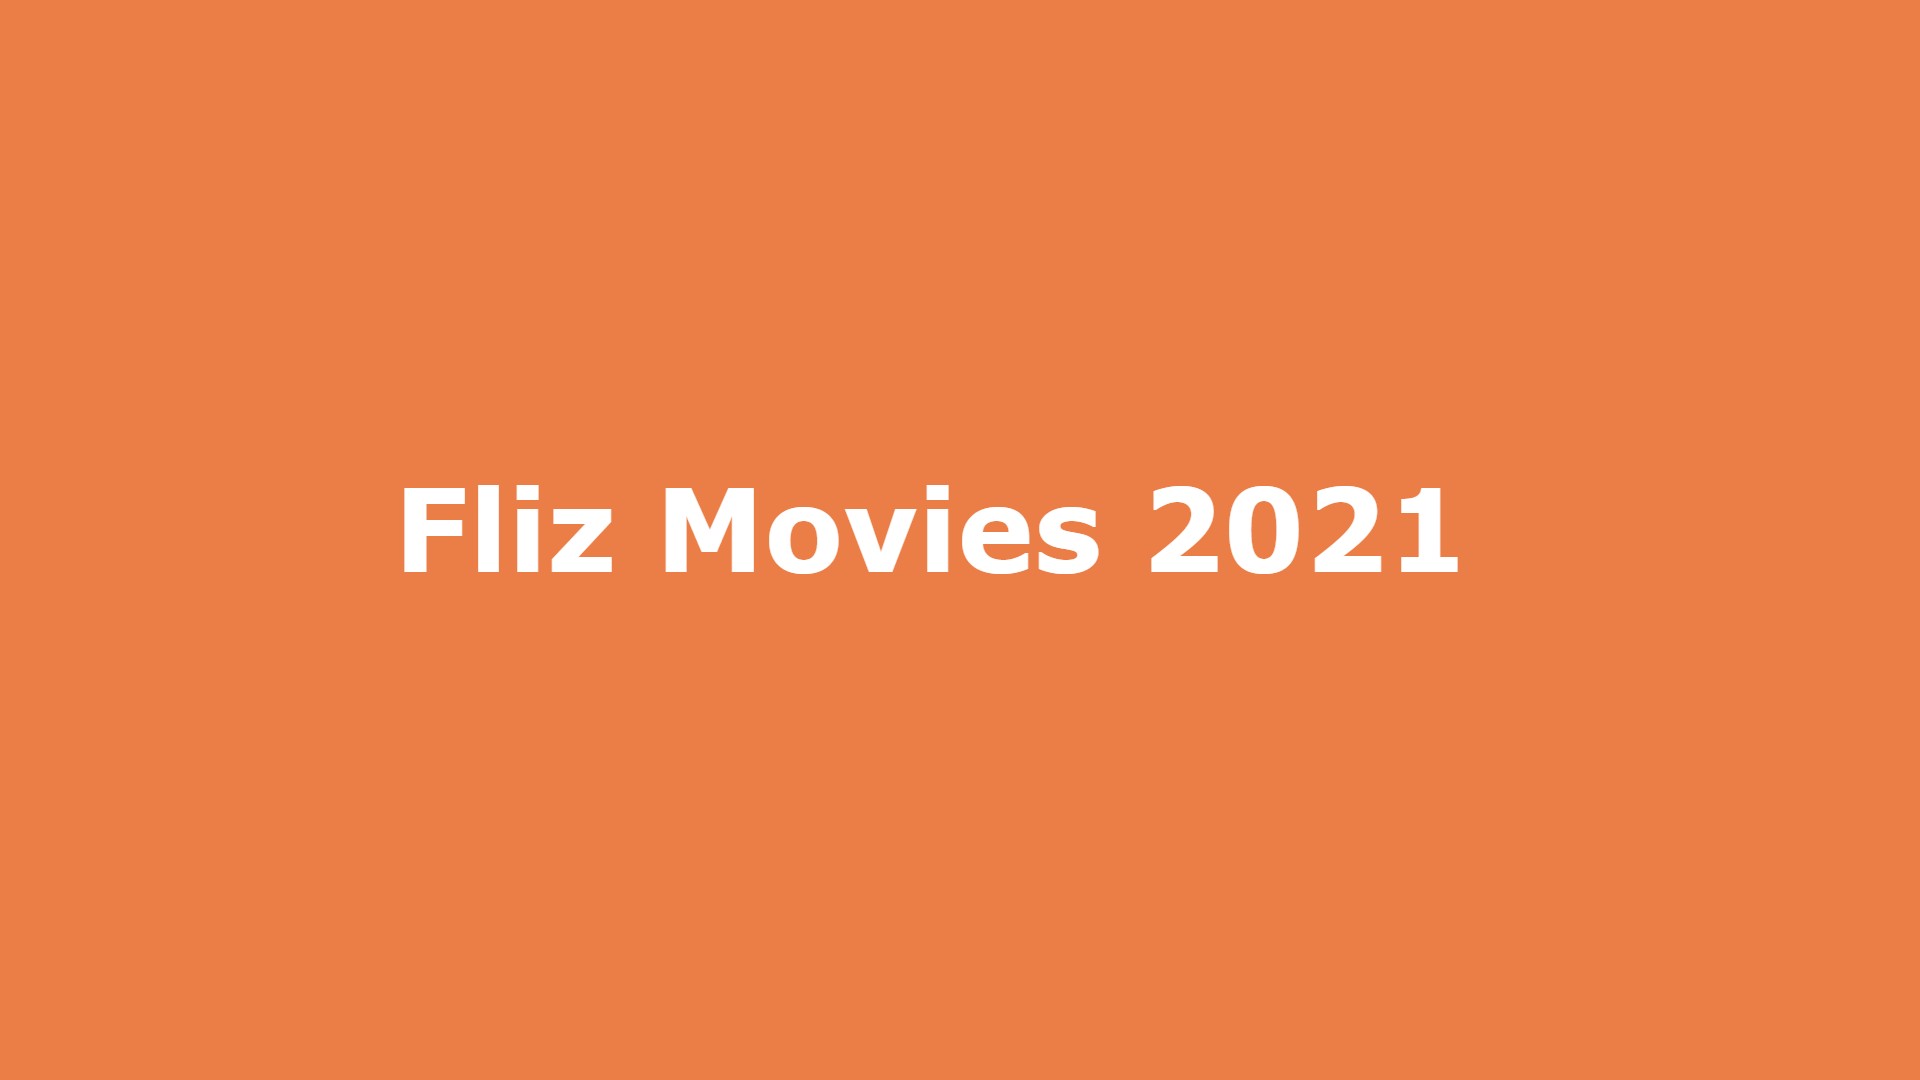 Fliz Movies 2021: Fliz Movies Illegal Movies HD Download Website Trends